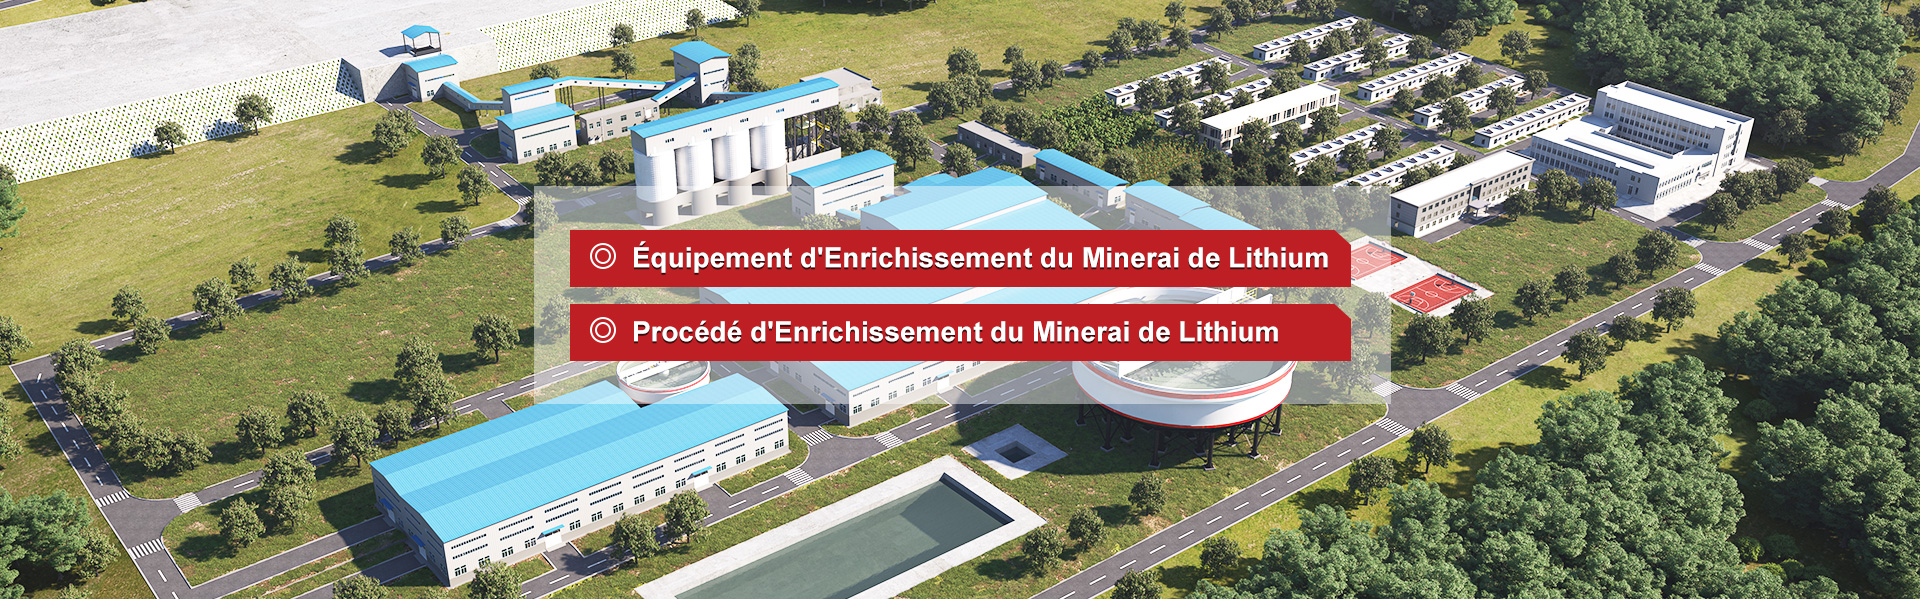 Équipement d'Enrichissement du Minerai de Lithium、Procédé d'Enrichissement du Minerai de Lithium